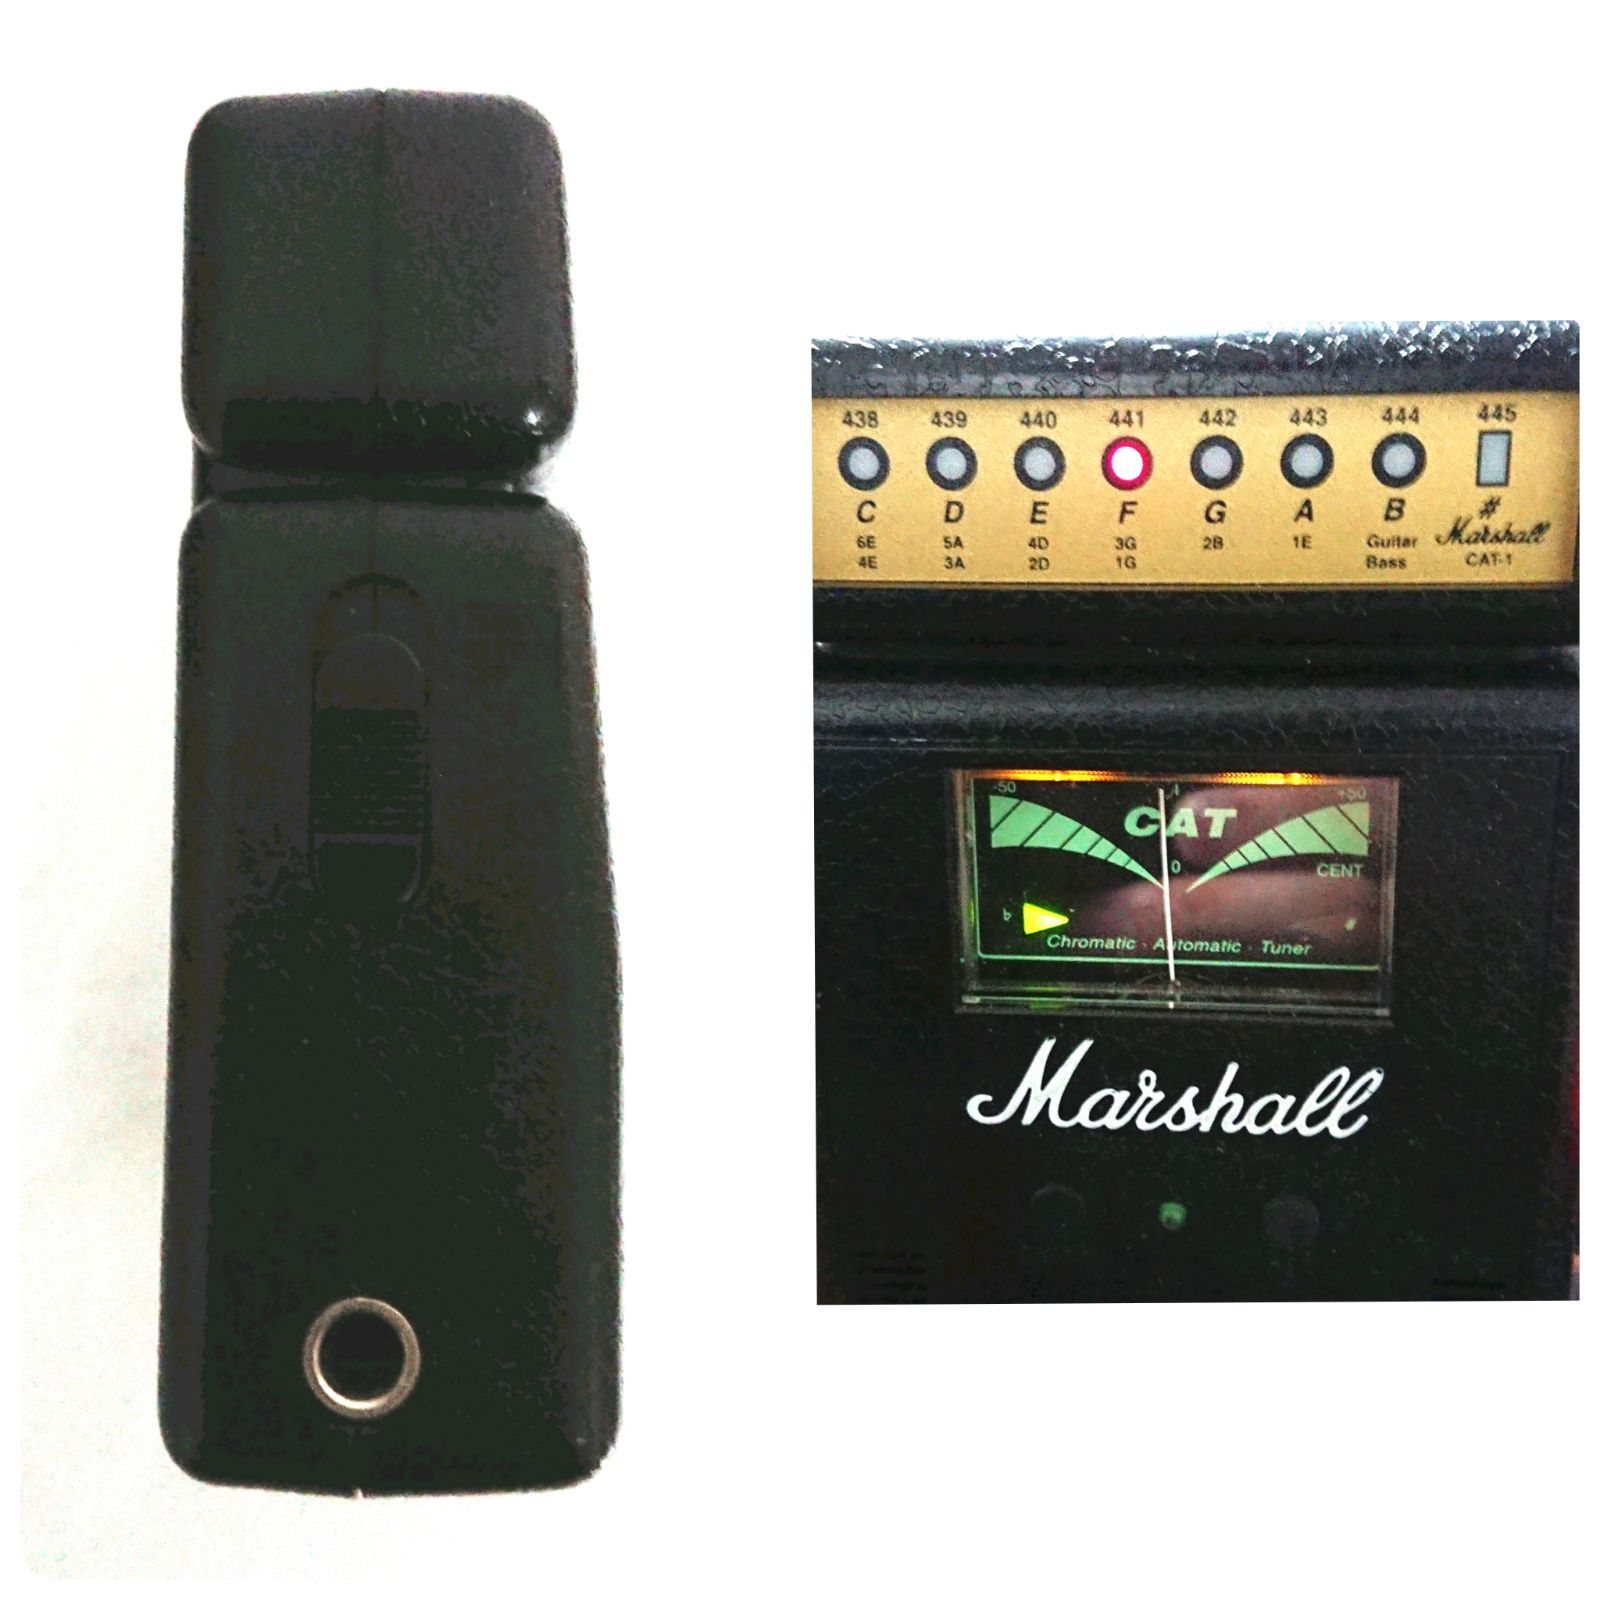 Marshall マーシャル C.A.T. アンプ型 ギターチューナー エレキギター アコースティックギター ベースも使用O可能 置き型  ミニチューナー 9V電池